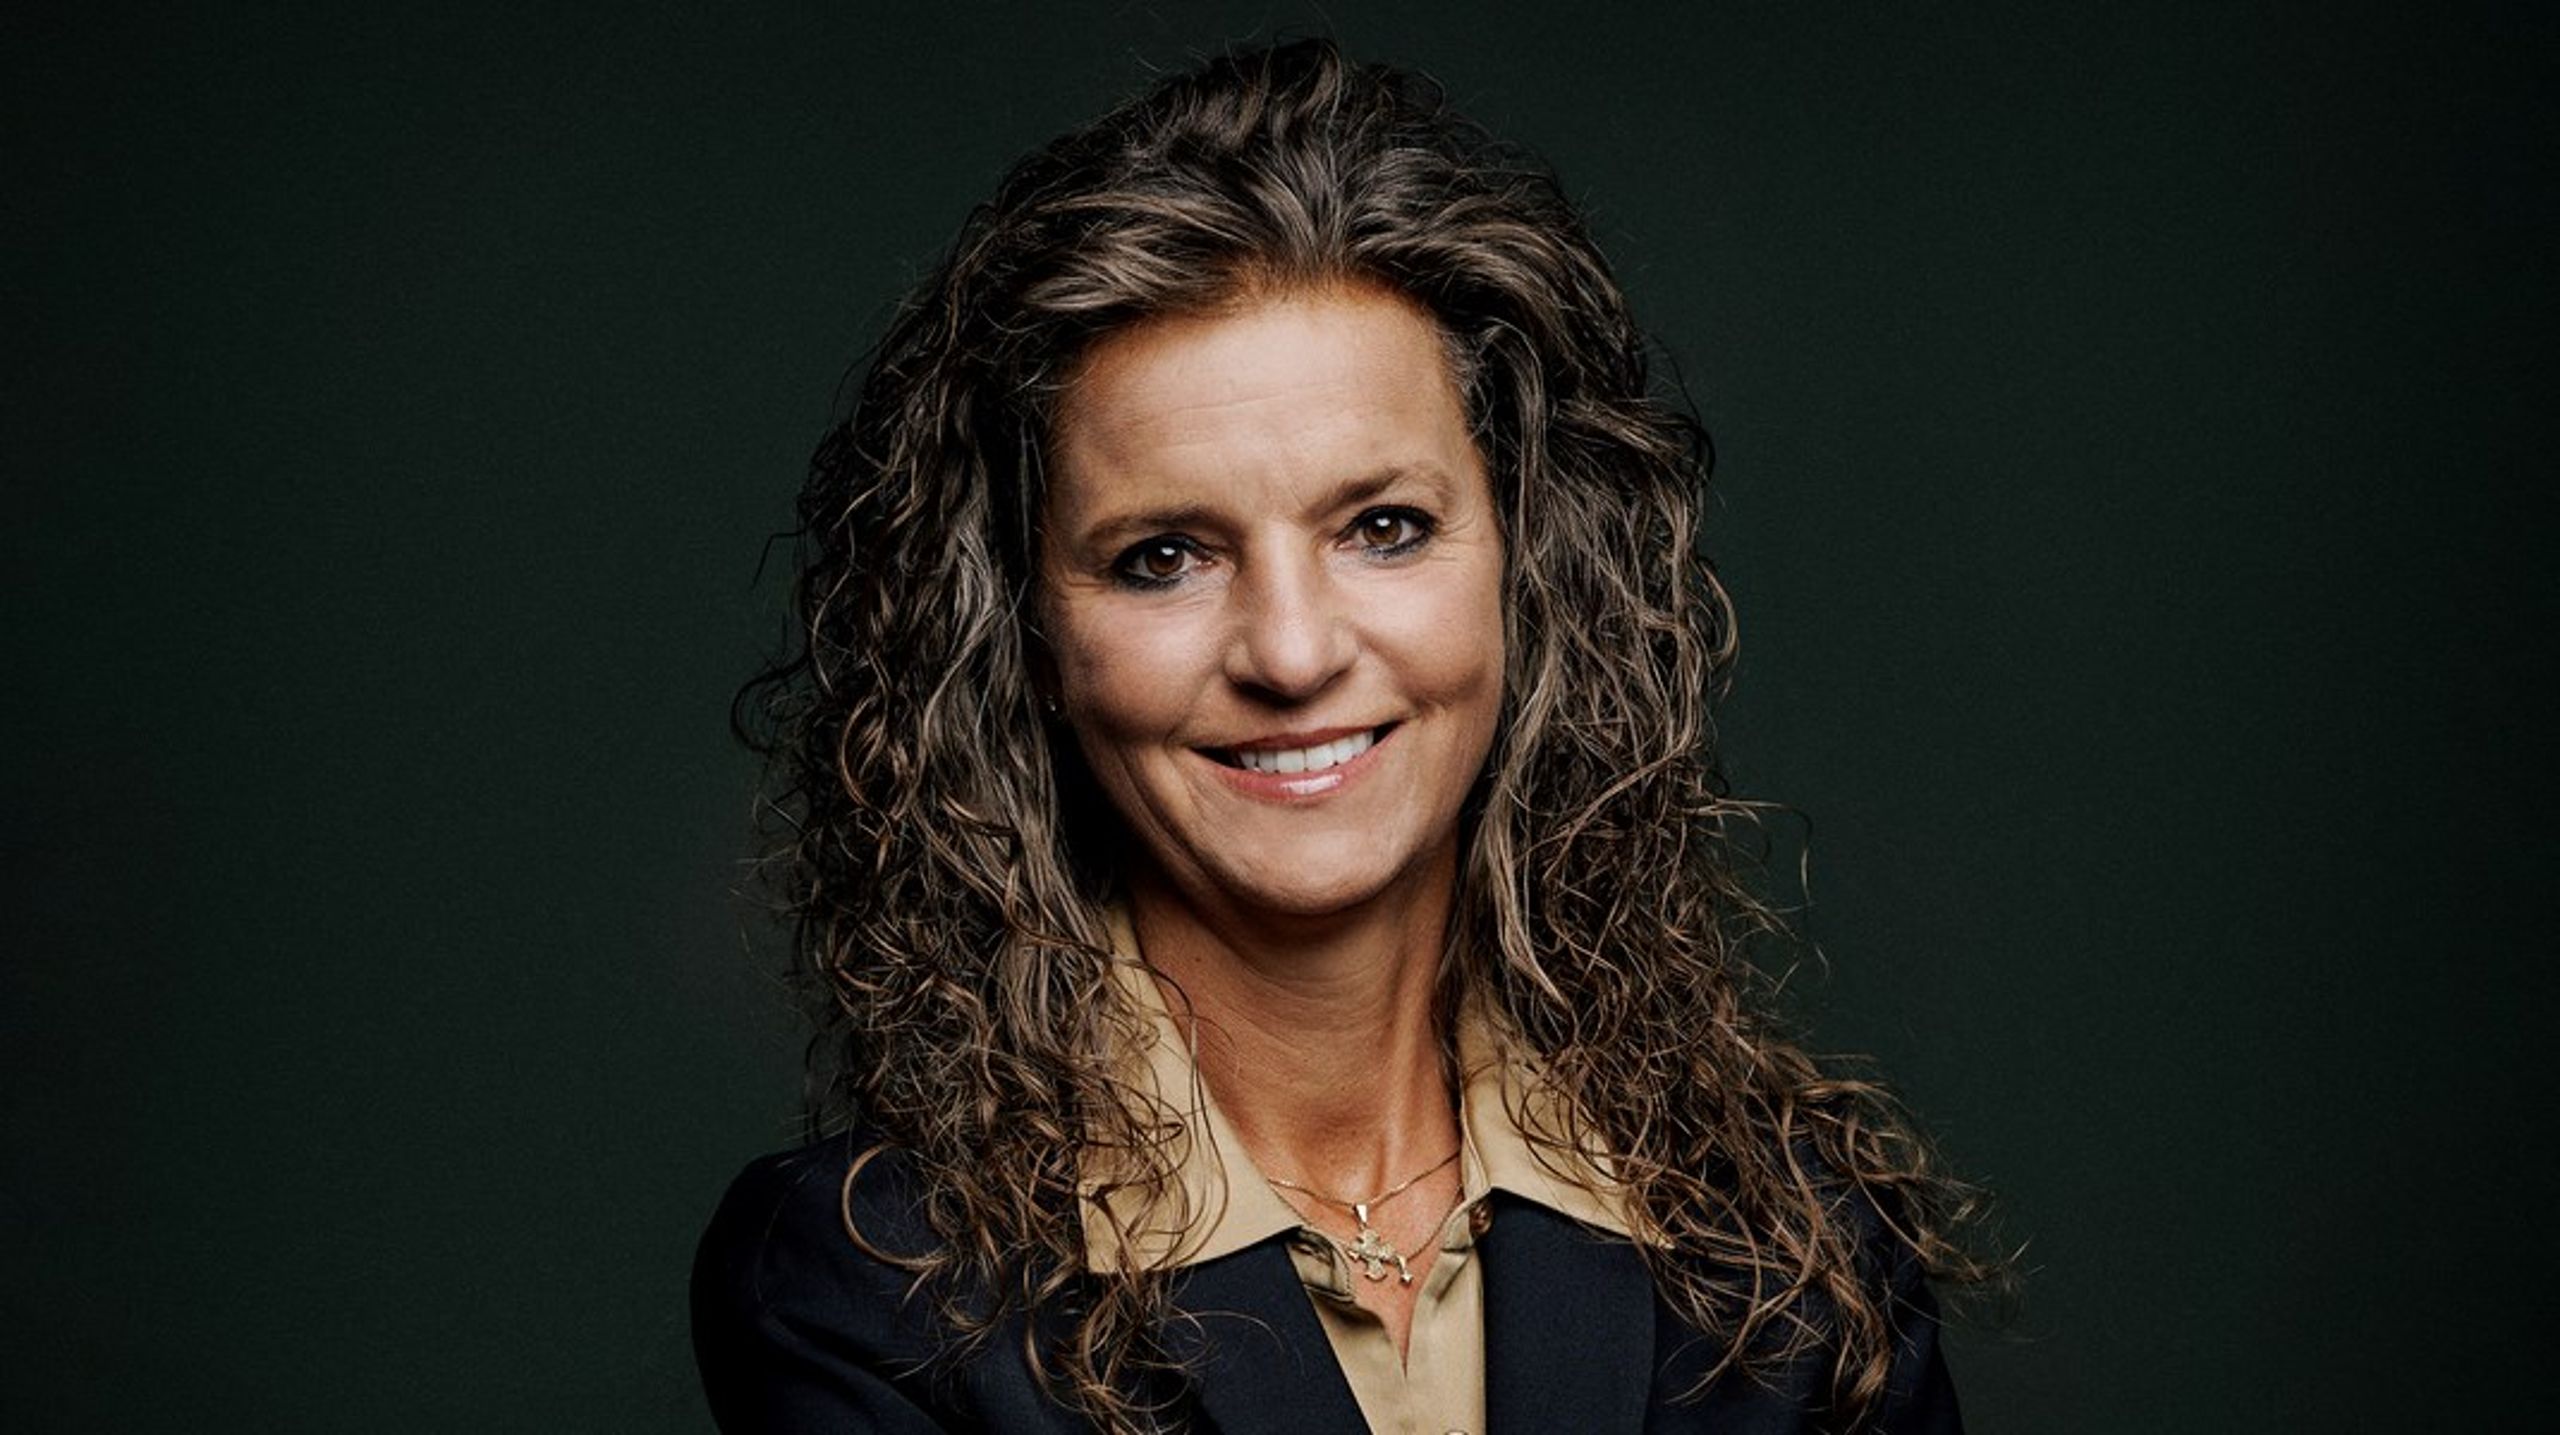 Nicole Offendal er ny administrerende direktør i Finanssektorens Arbejdsgiverforening. Hun kommer fra en stilling i Danske Bank.